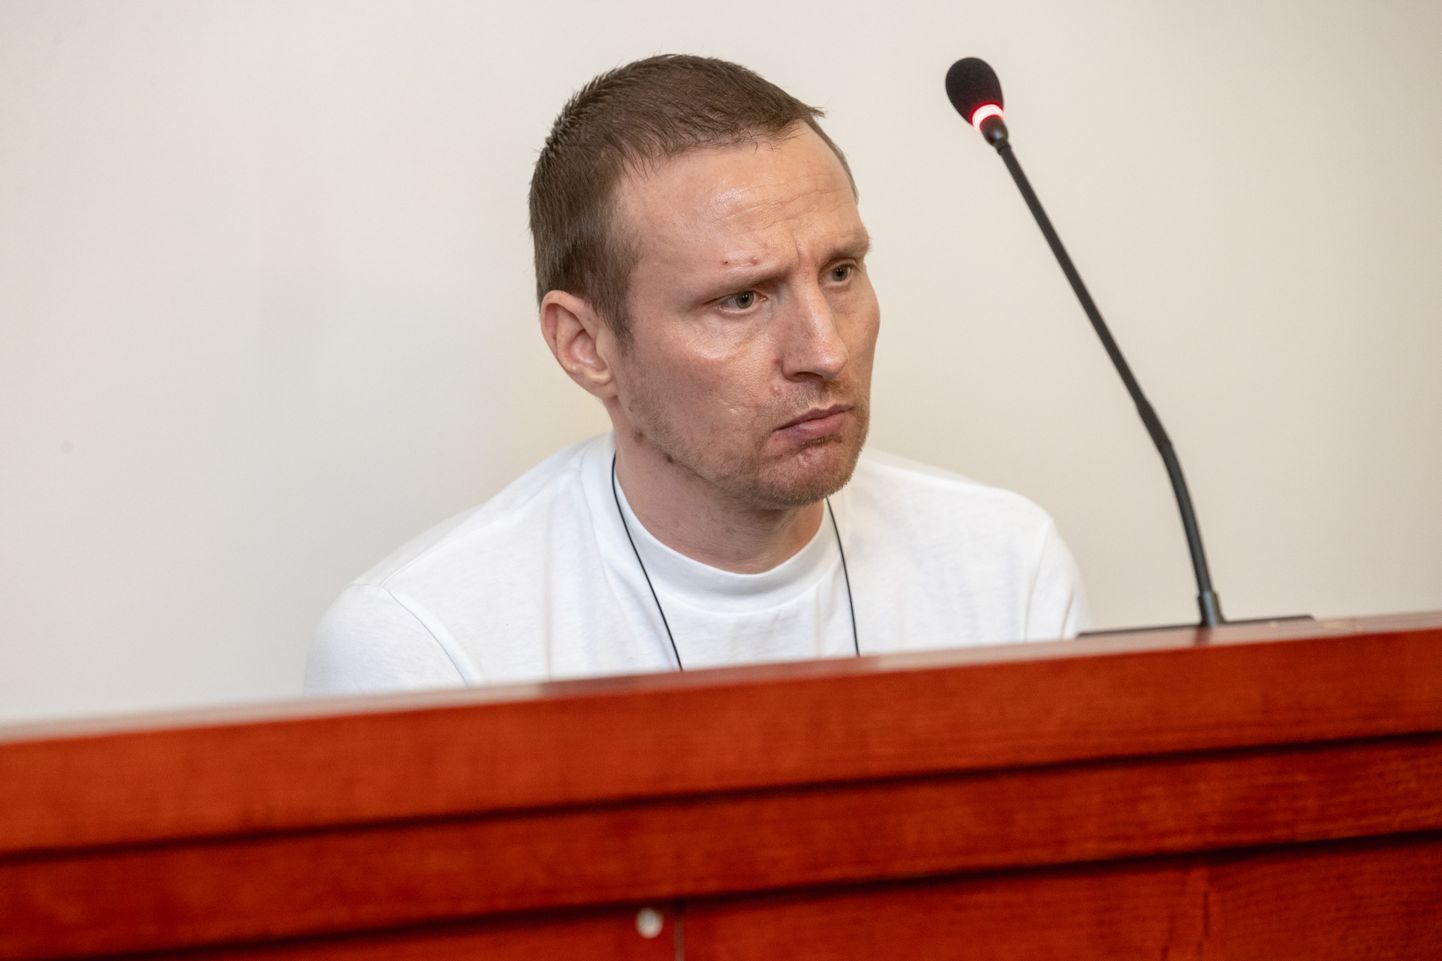 Tallinna ringkonnakohus tühistas maakohtu pretsedendi ning muutis Andres Reinarti kuriteokvalifikatsiooni.